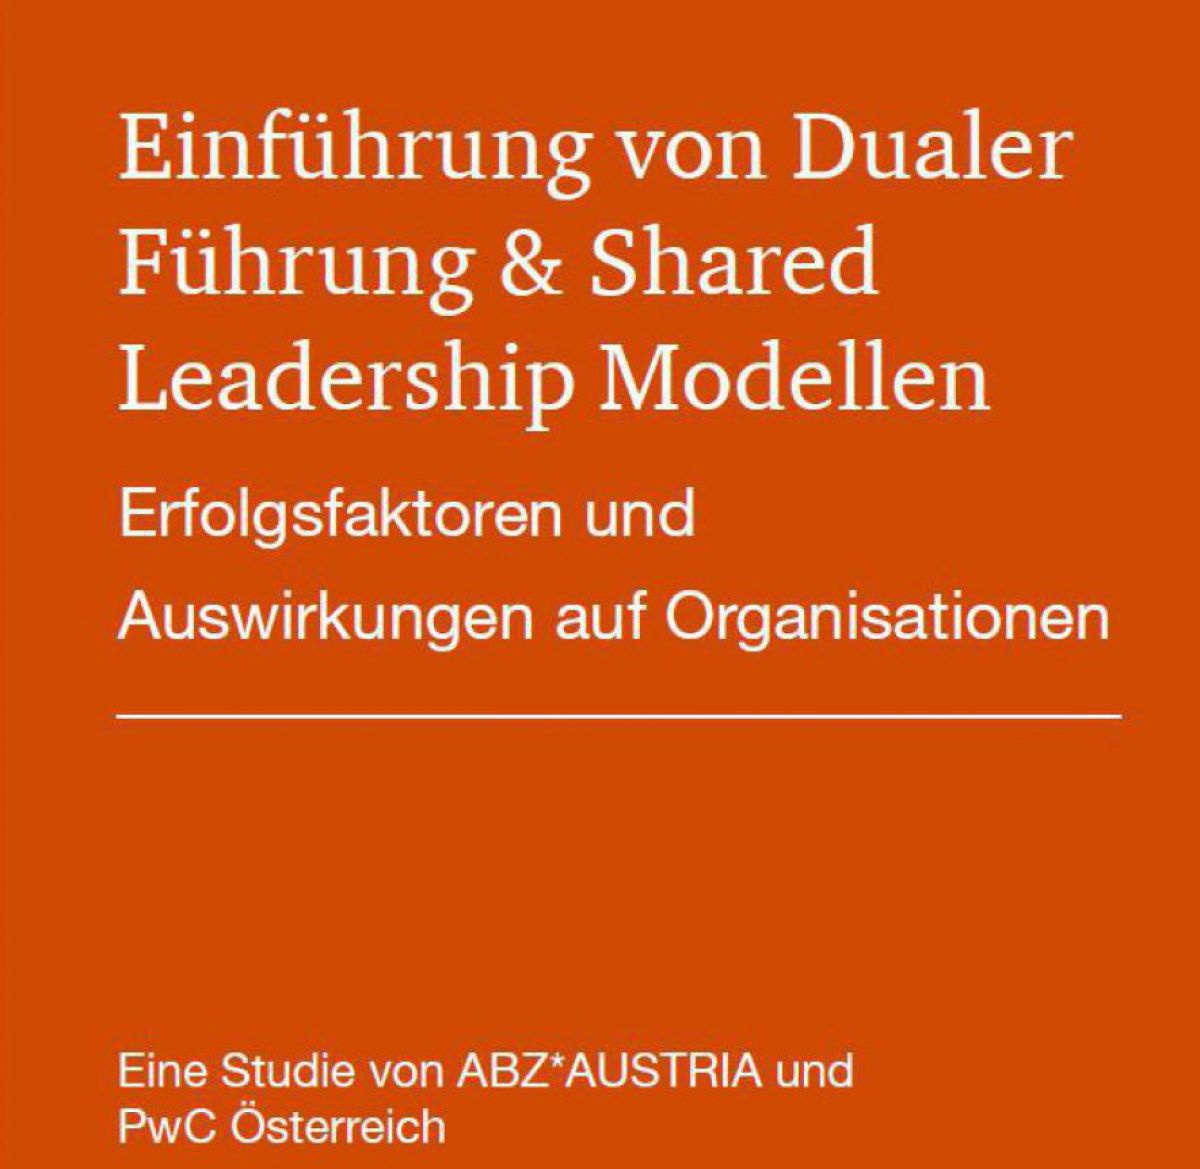 Auf orangem Cover steht der Tiel des Papers: Einführung von Dualer Führung & Shared Leadership Modellen: Erfolgsfaktoren ud Auswirkungen auf Organisationen.